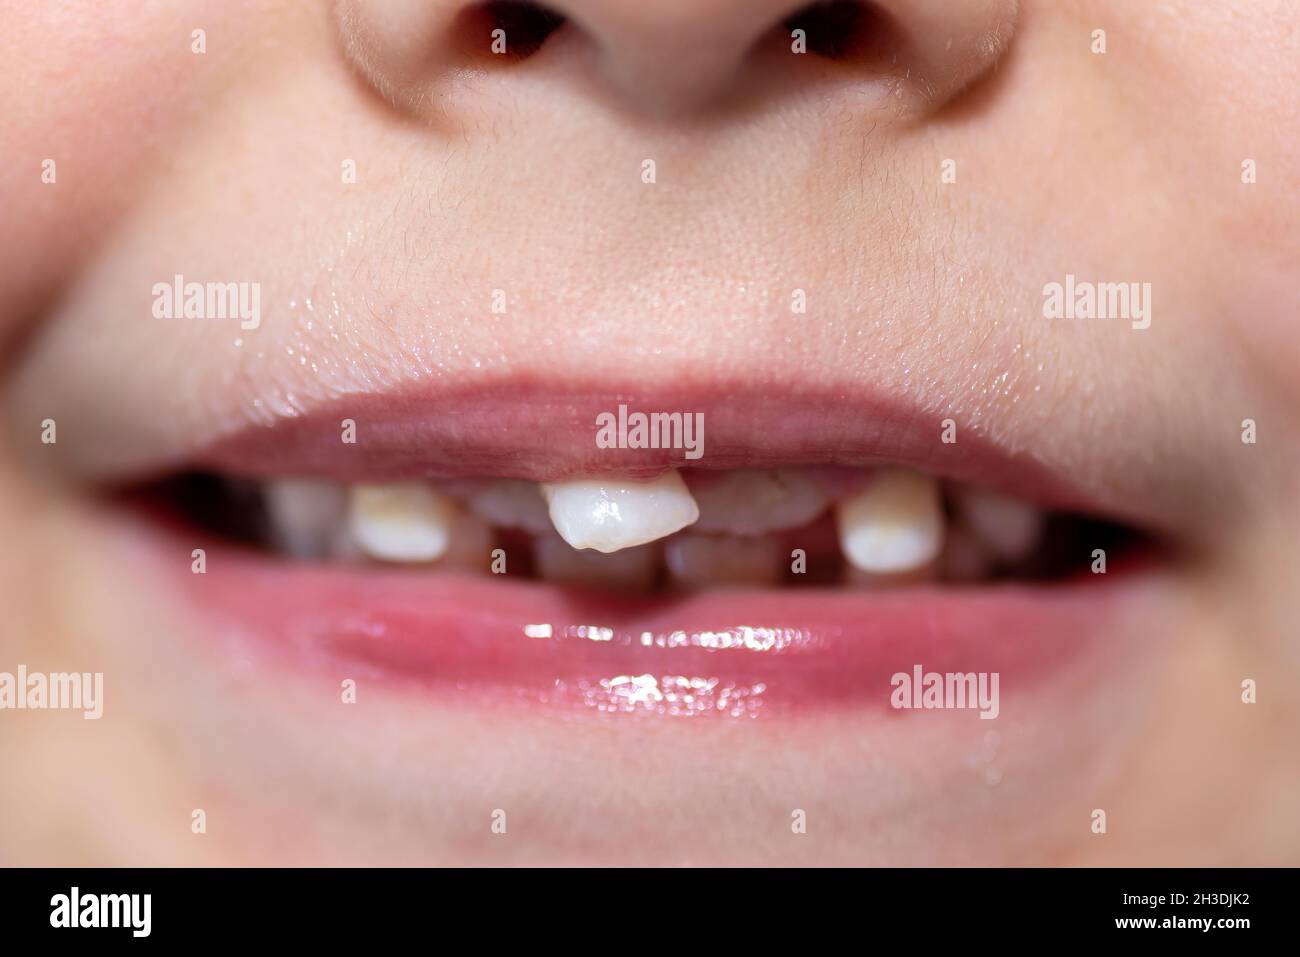 Petit garçon à bouche ouverte montrant des dents de lait à l'avant et des dents permanentes en croissance. Banque D'Images